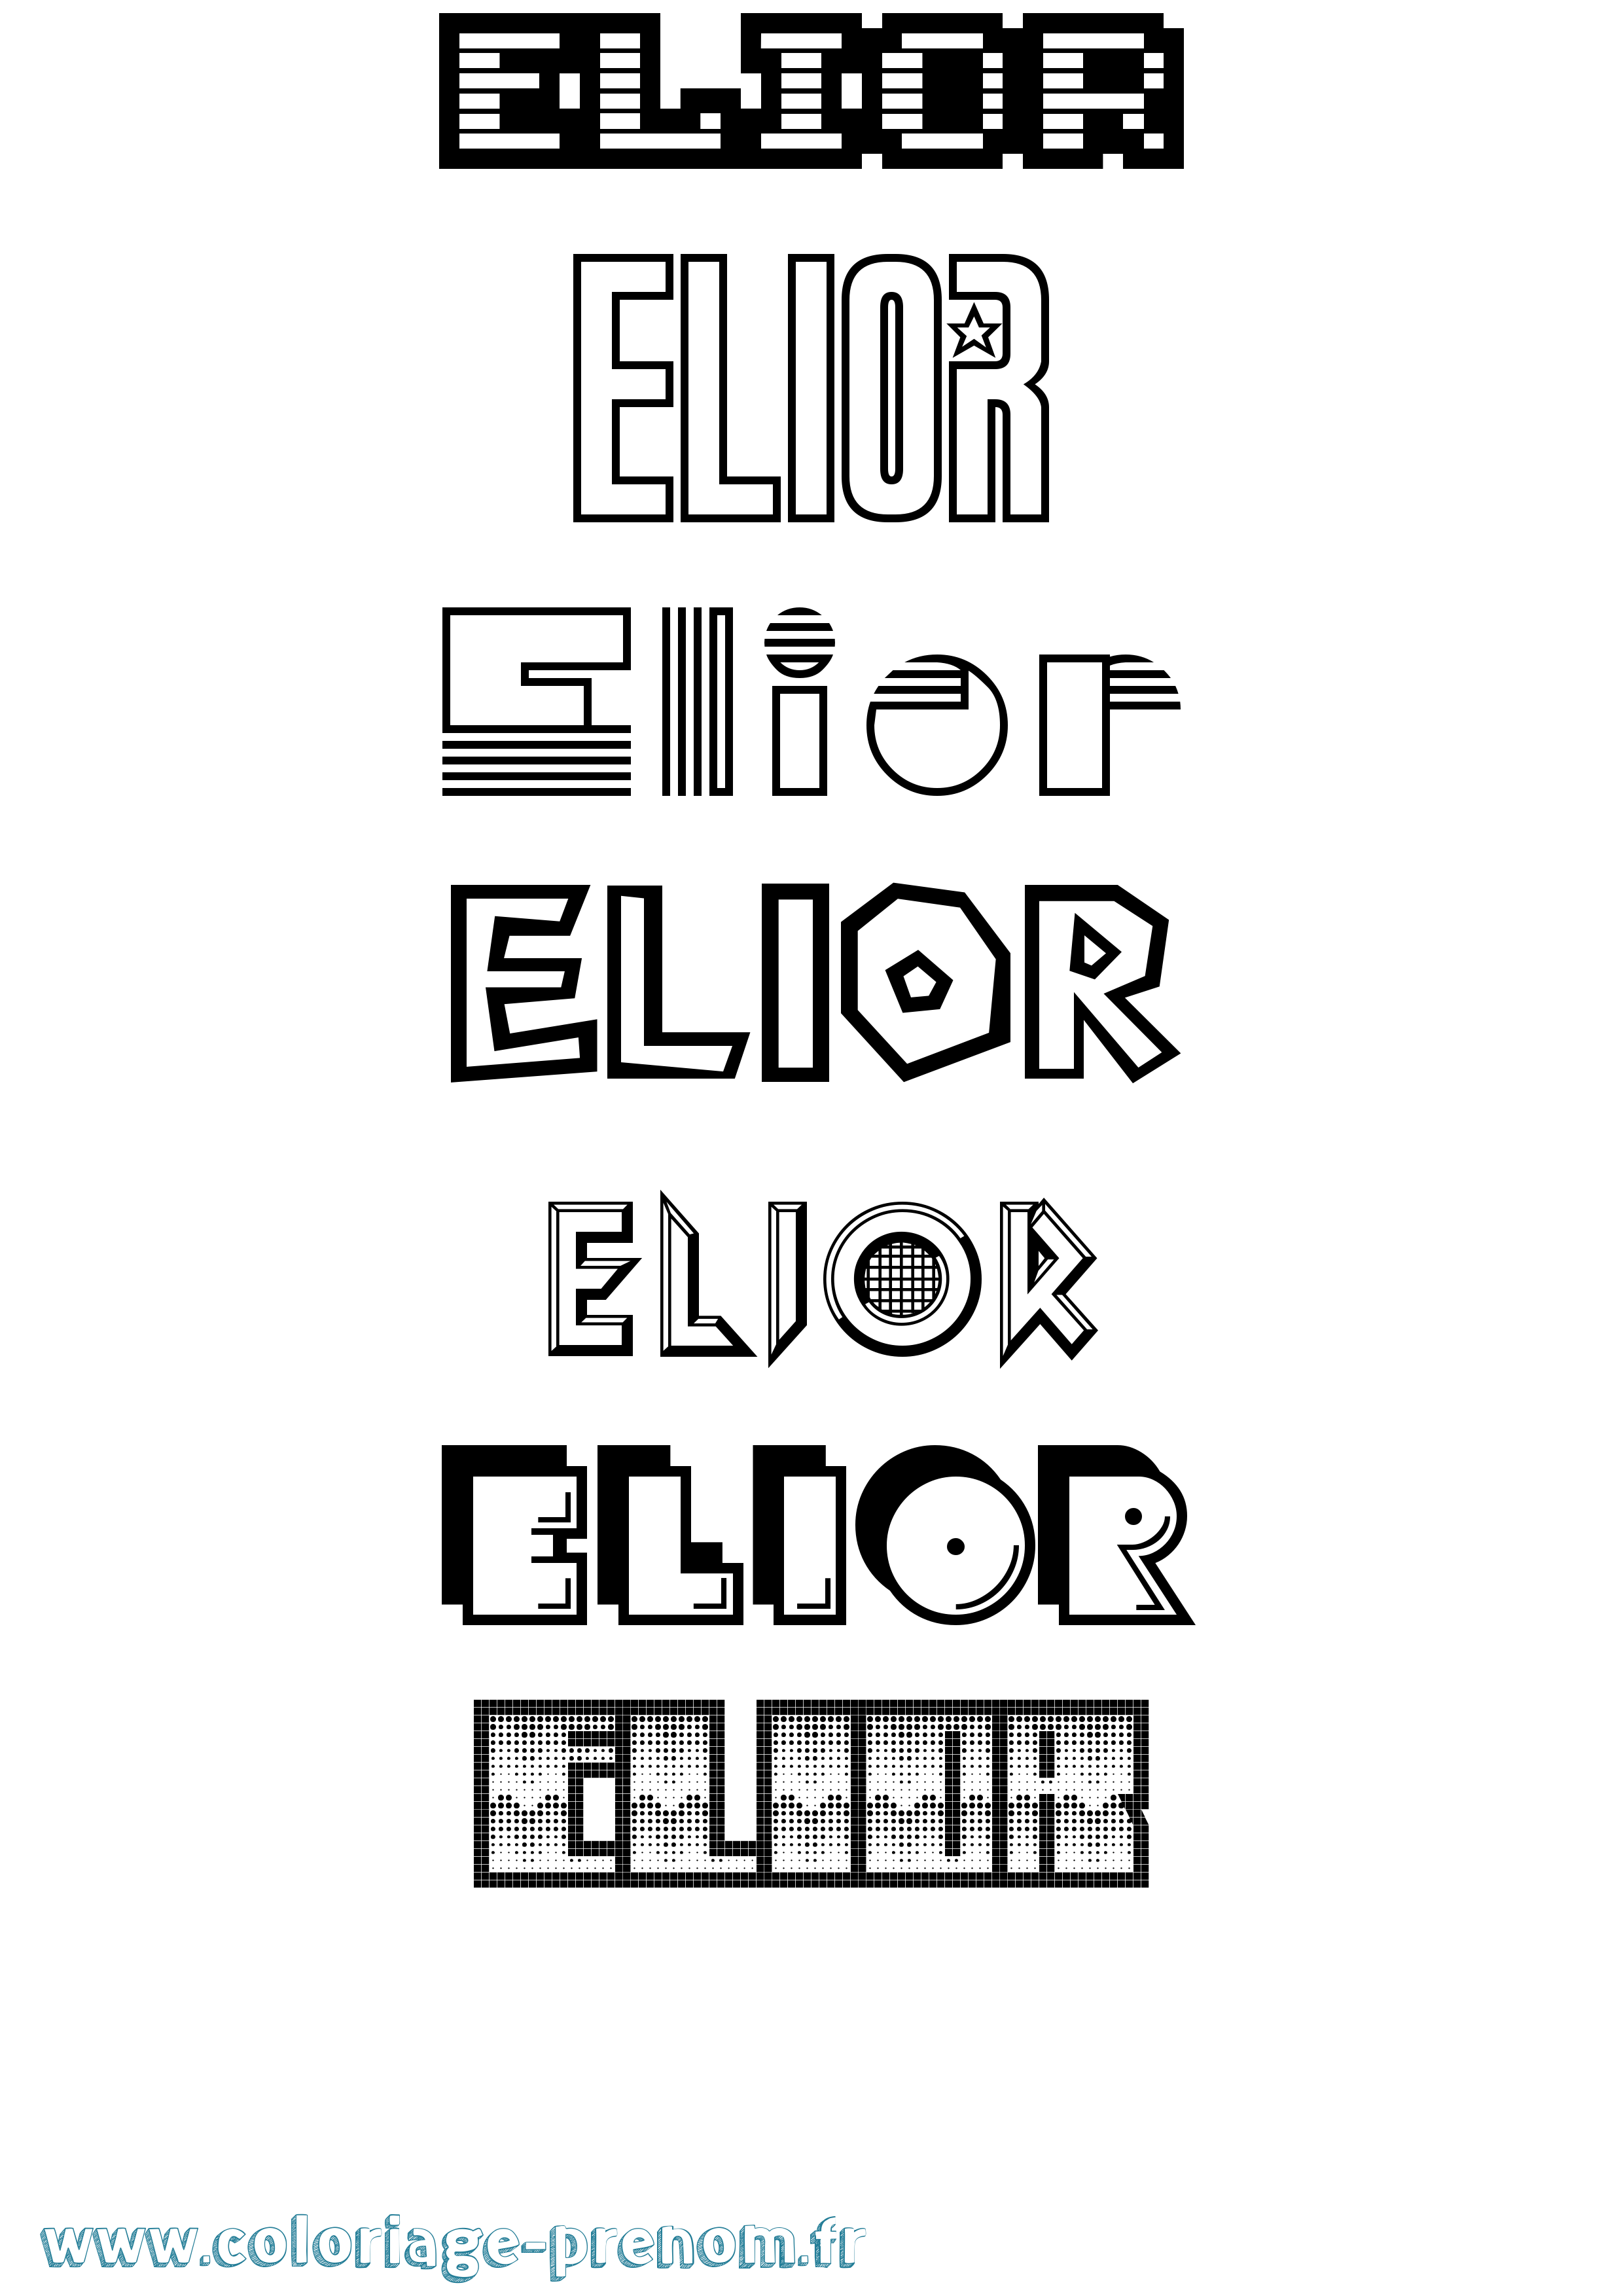 Coloriage prénom Elior